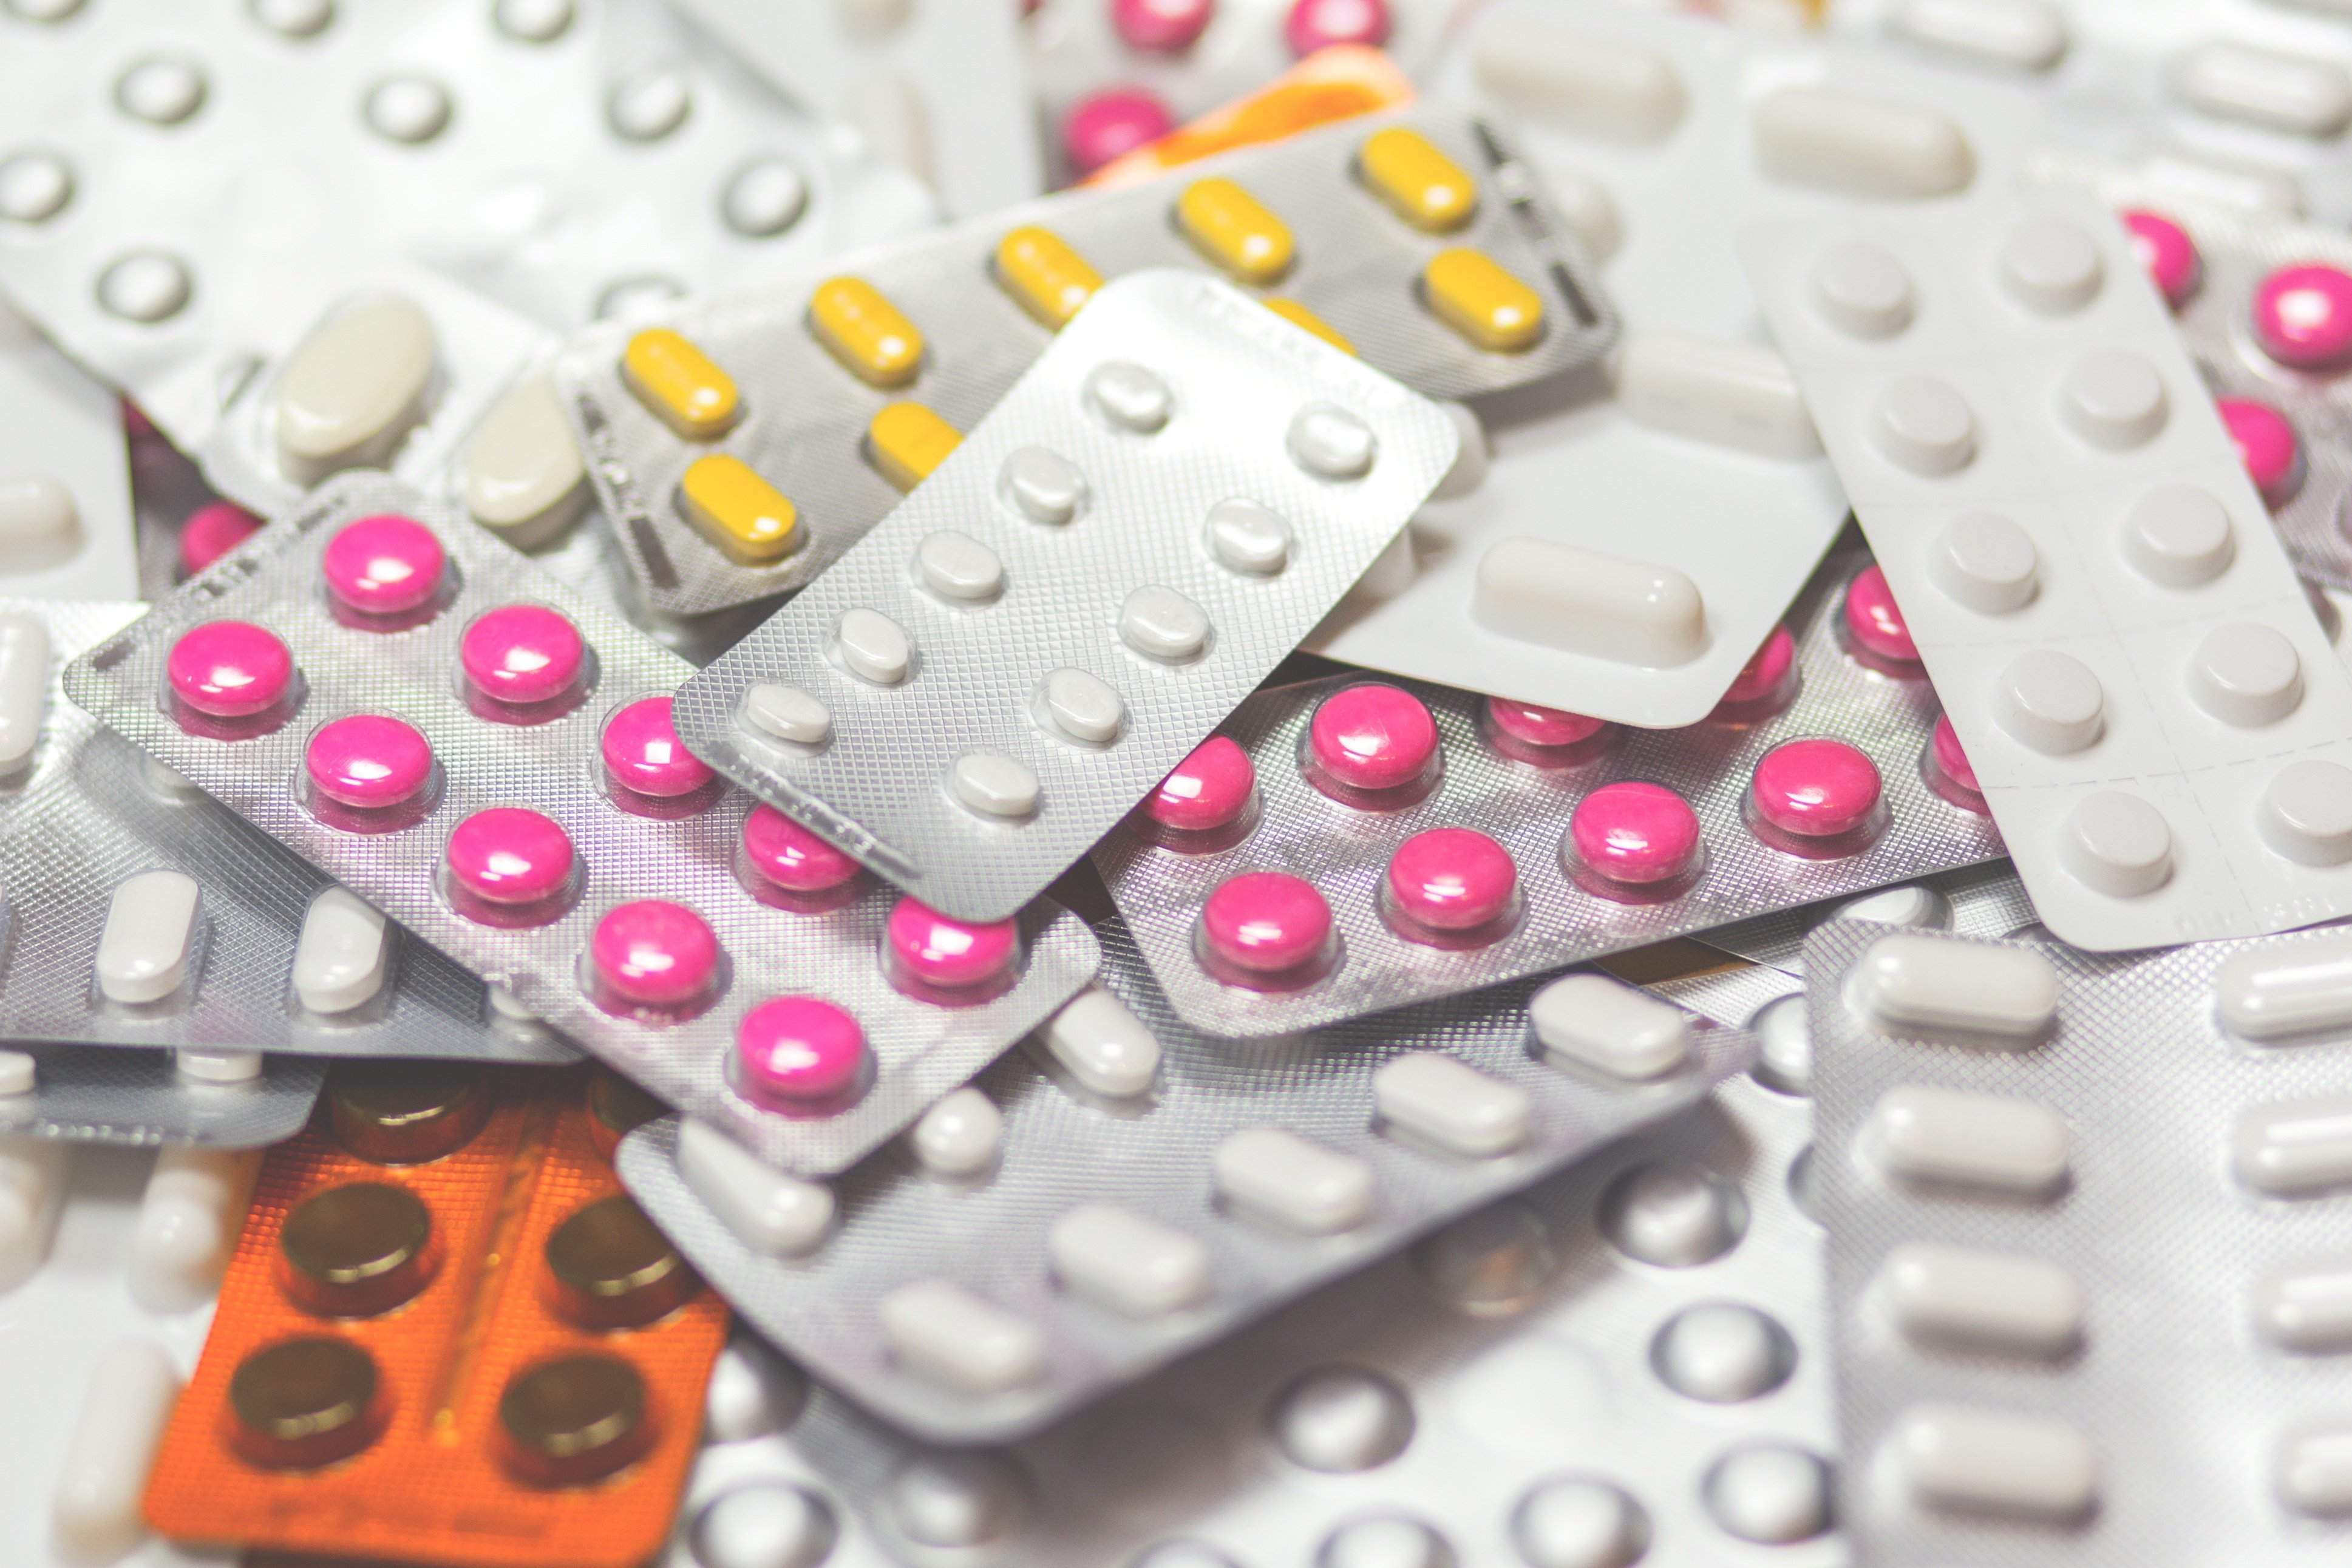 El 1 de enero bajarán los precios de más de 1.200 medicamentos en las farmacias